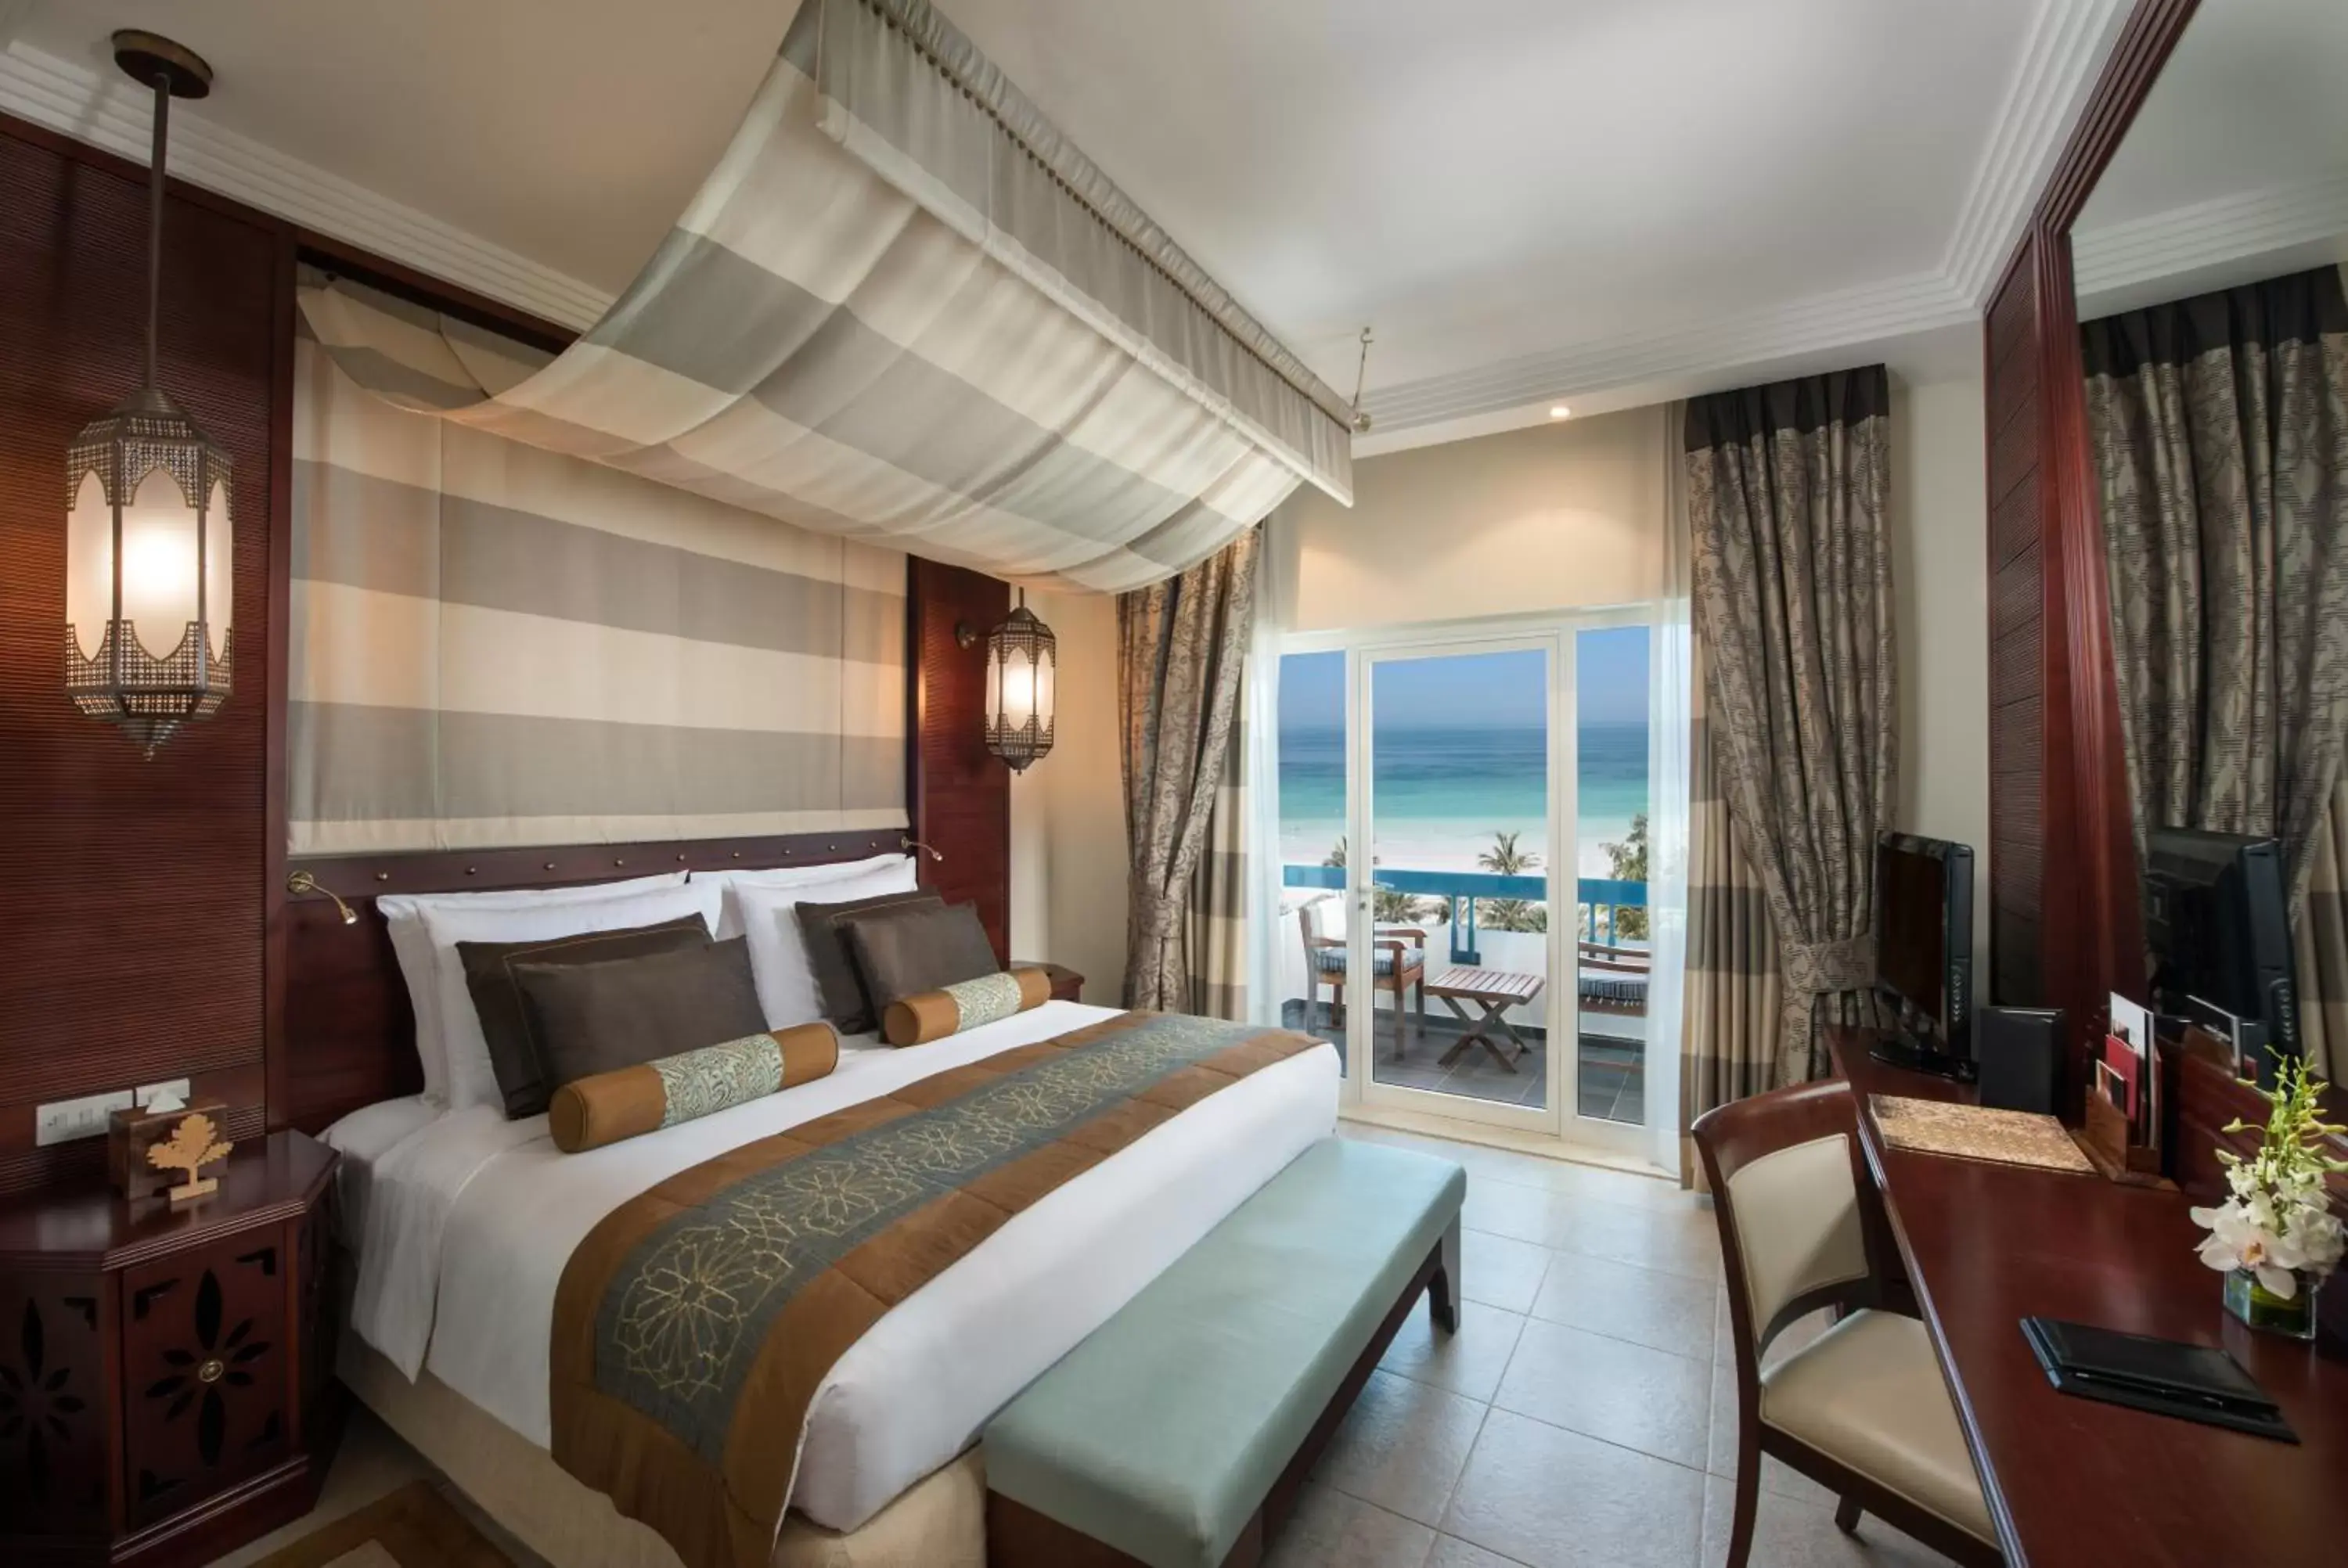 Bedroom in Ajman Hotel by Blazon Hotels